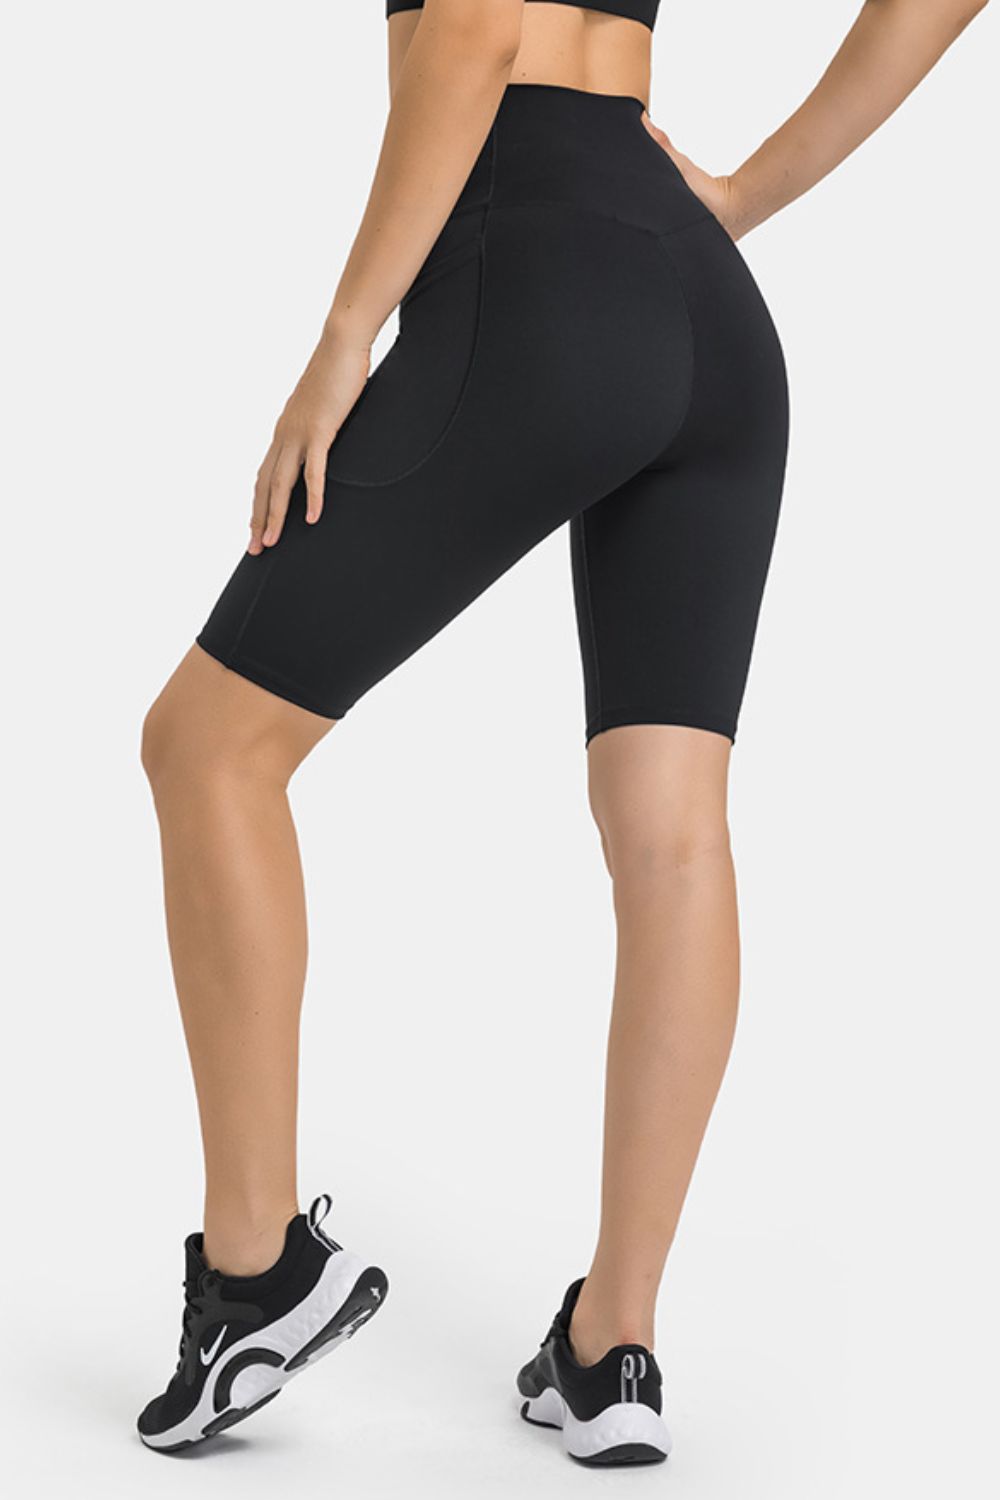 Women’s High Waist Biker Shorts with Pockets